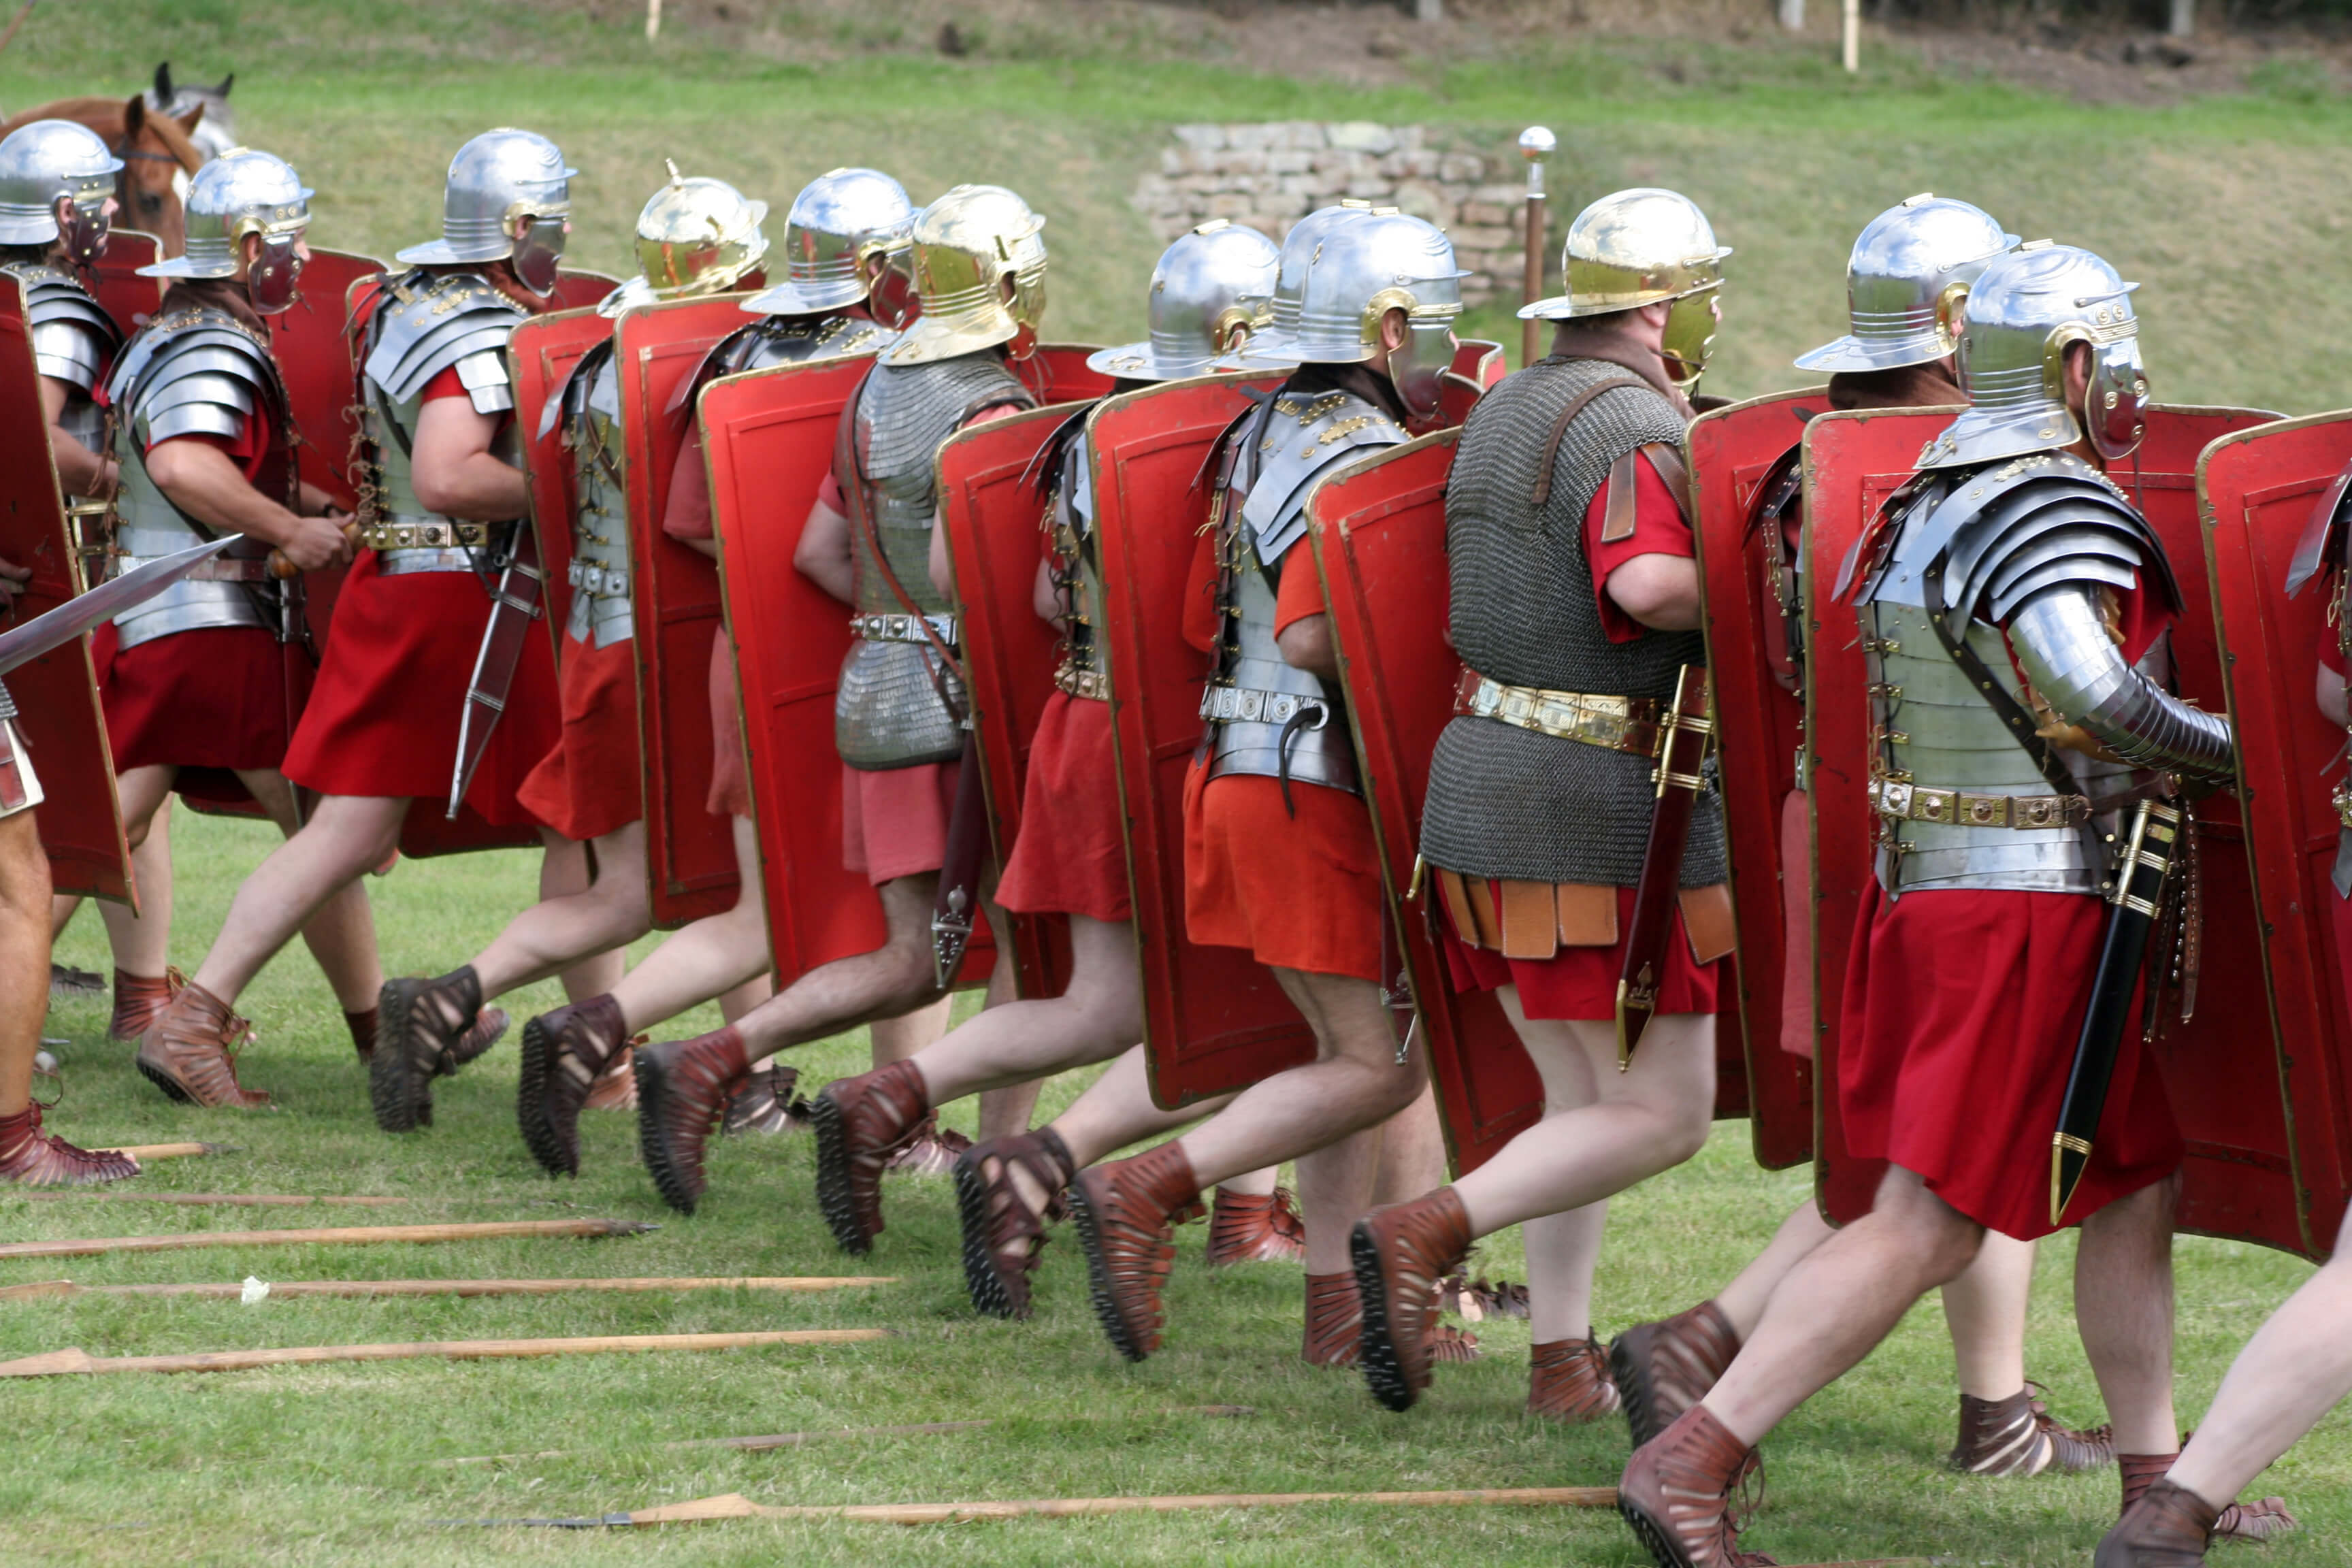 ممثلون يرتدون زي الجنود الرومان أثناء المعركة. الرسم التوضيحي: شترستوك